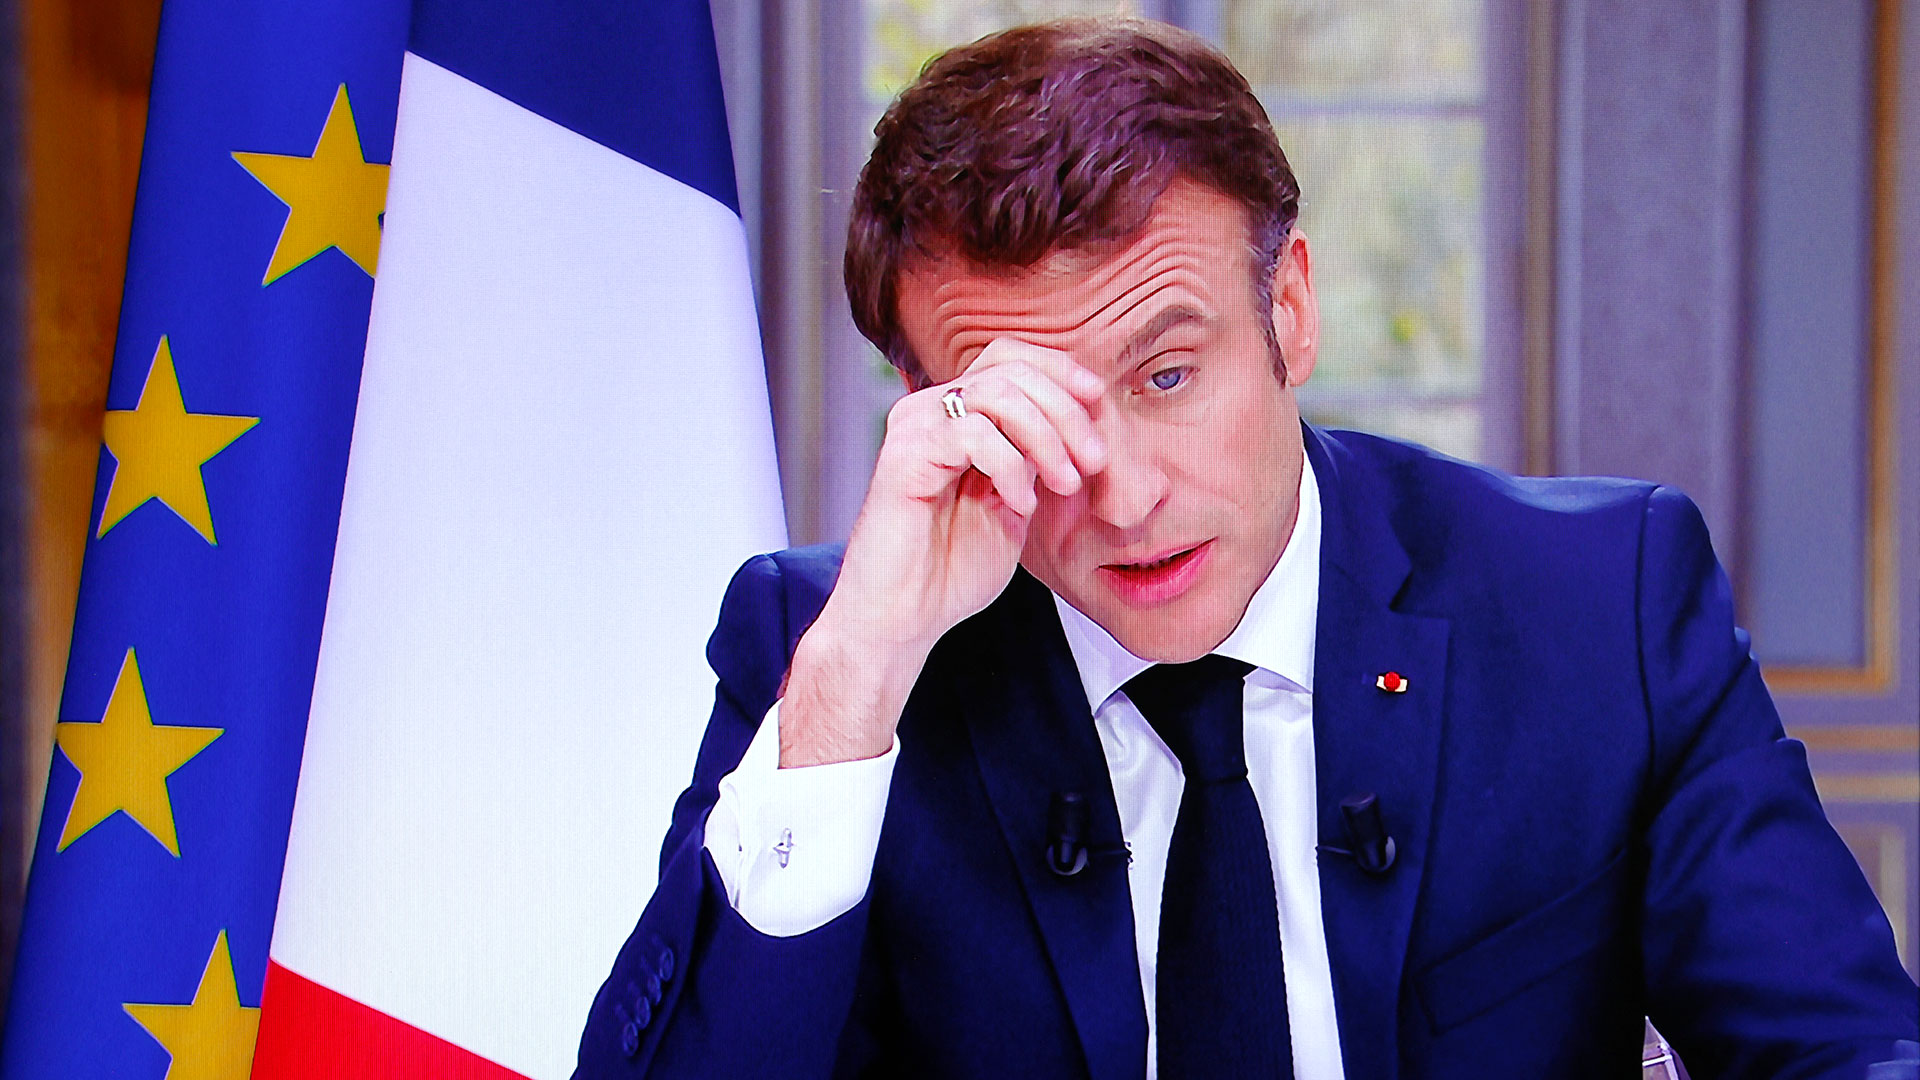 El presidente Emmanuel Macron elude la ira desatada en las calles de Francia tras la reforma de pensiones. Sin embargo, hay temor por la radicalización en la movilización de este jueves